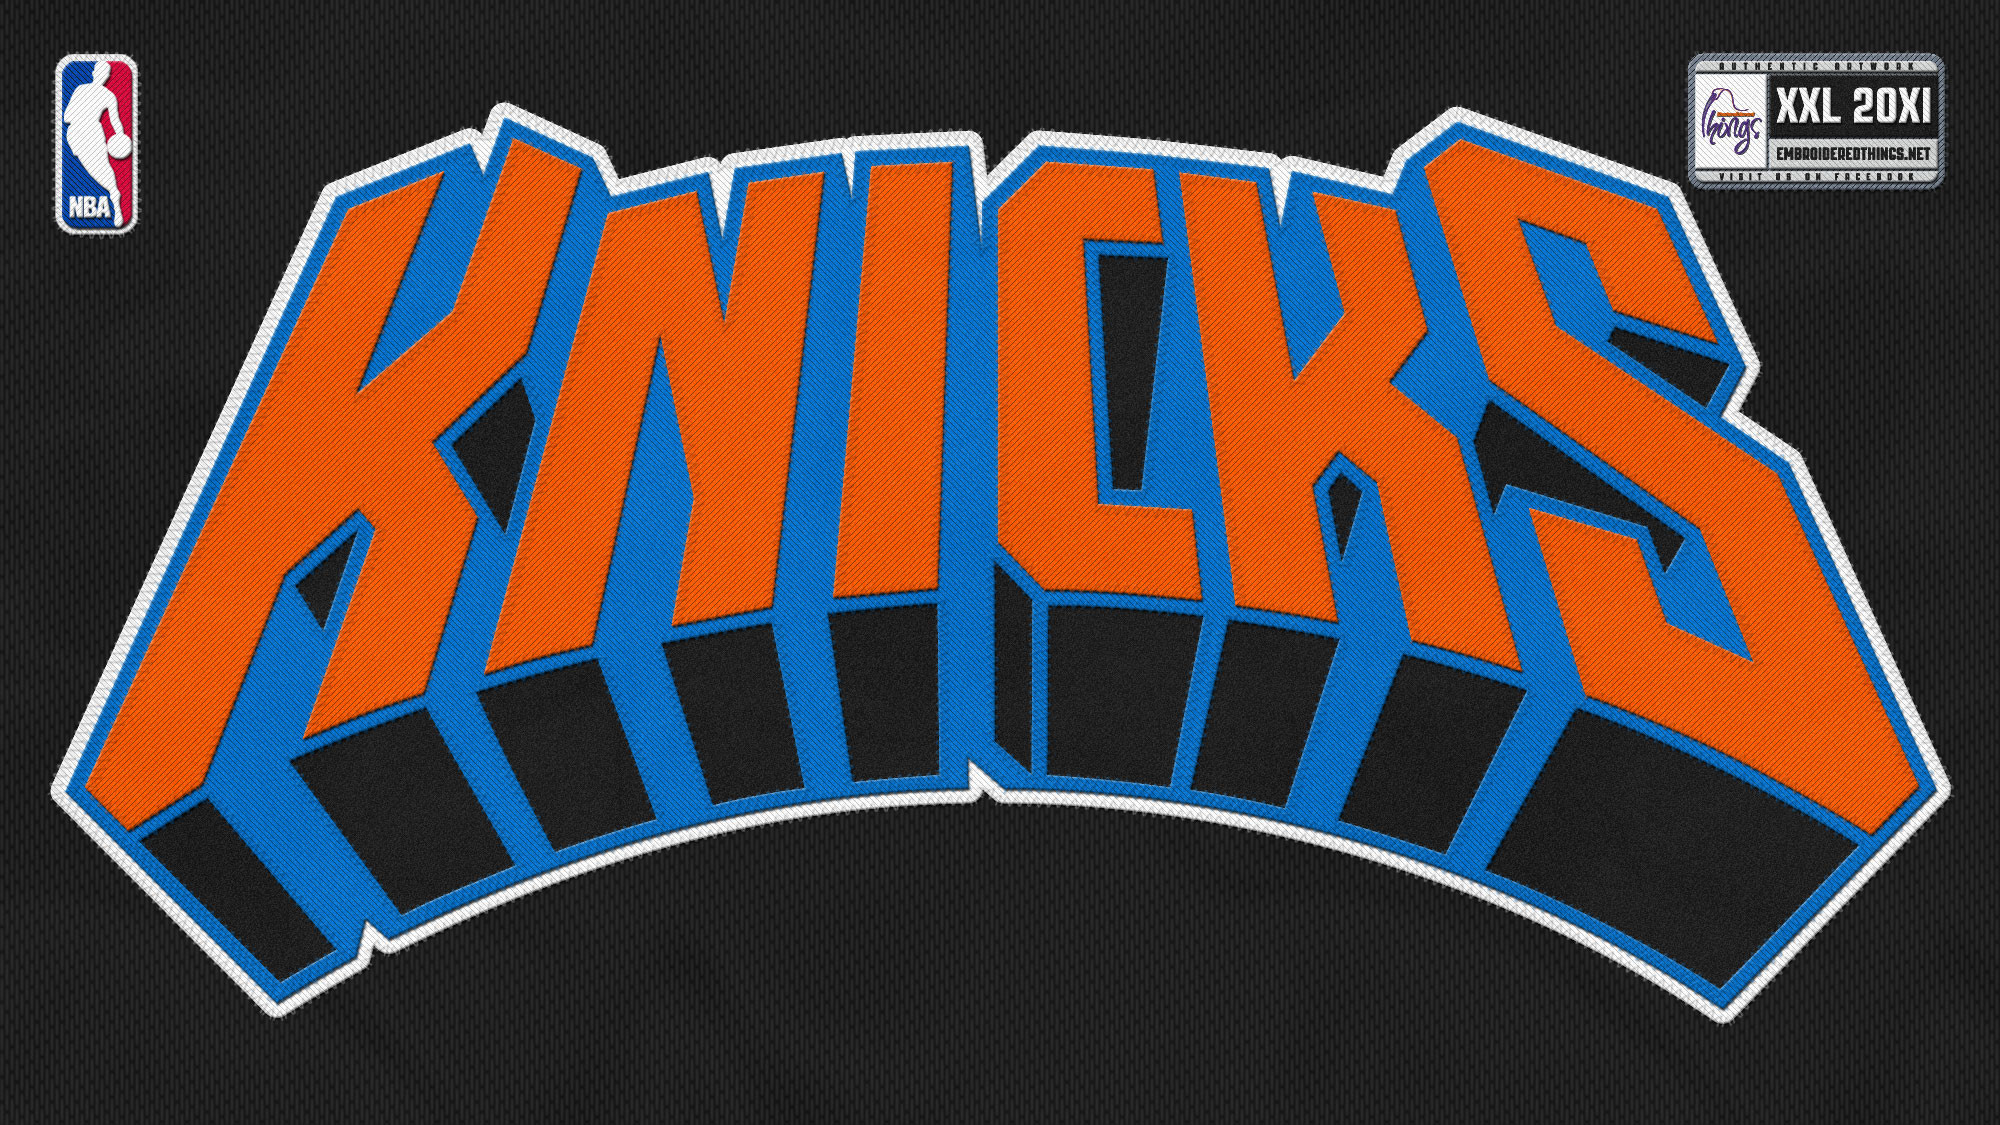 2000x1125 NBA New York Knicks Basketball HD Wallpaper Widescreen for Desktop PC